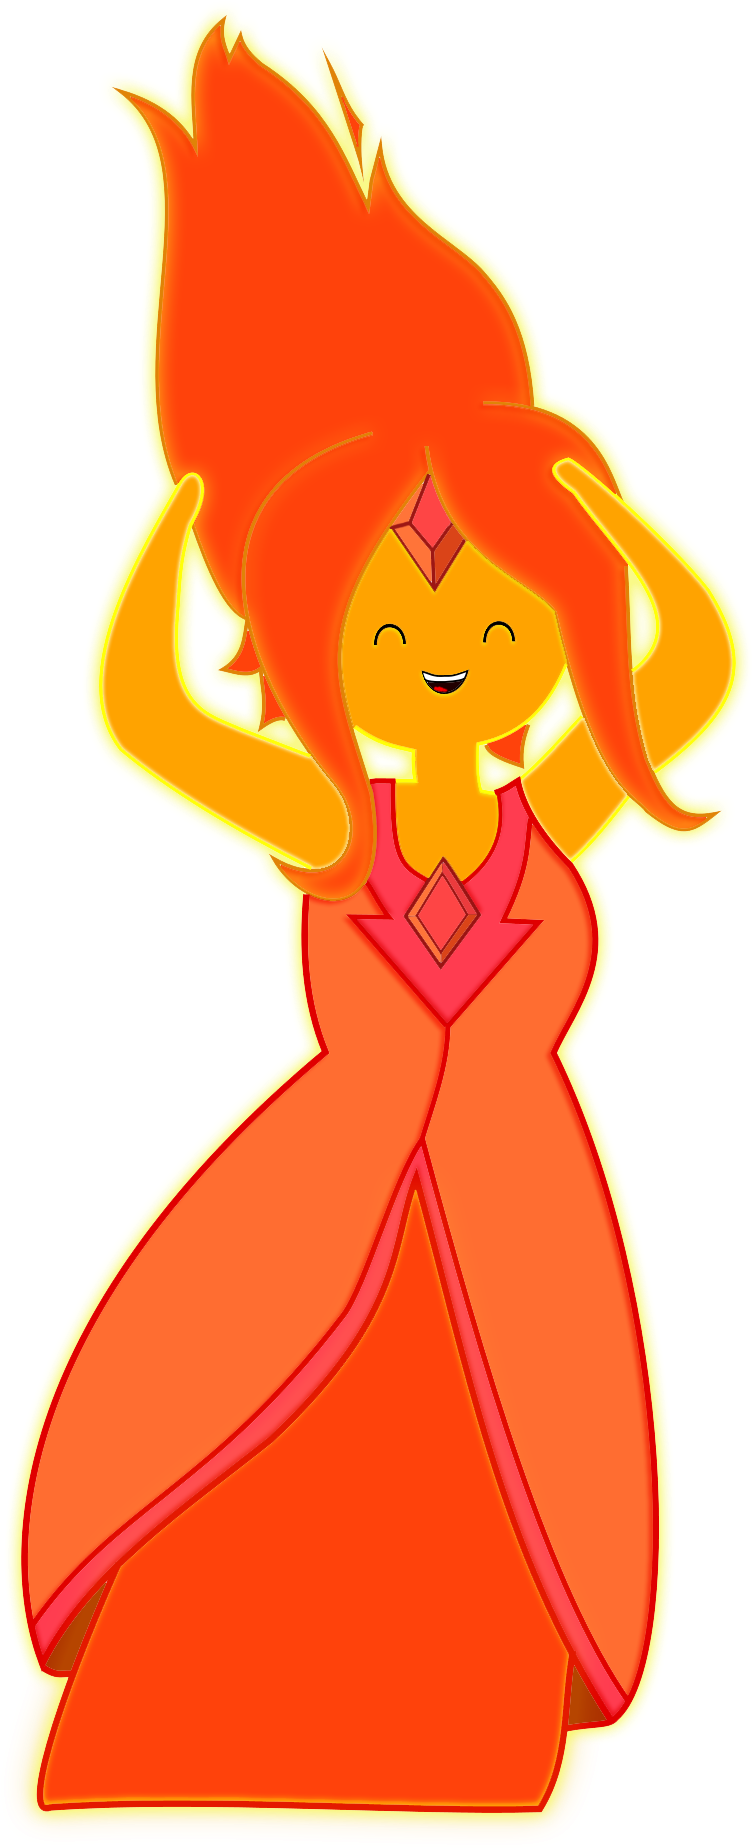 Flame Princess Carmelldansen Vector By Advenimetime - Flame Princess (2552x2324)